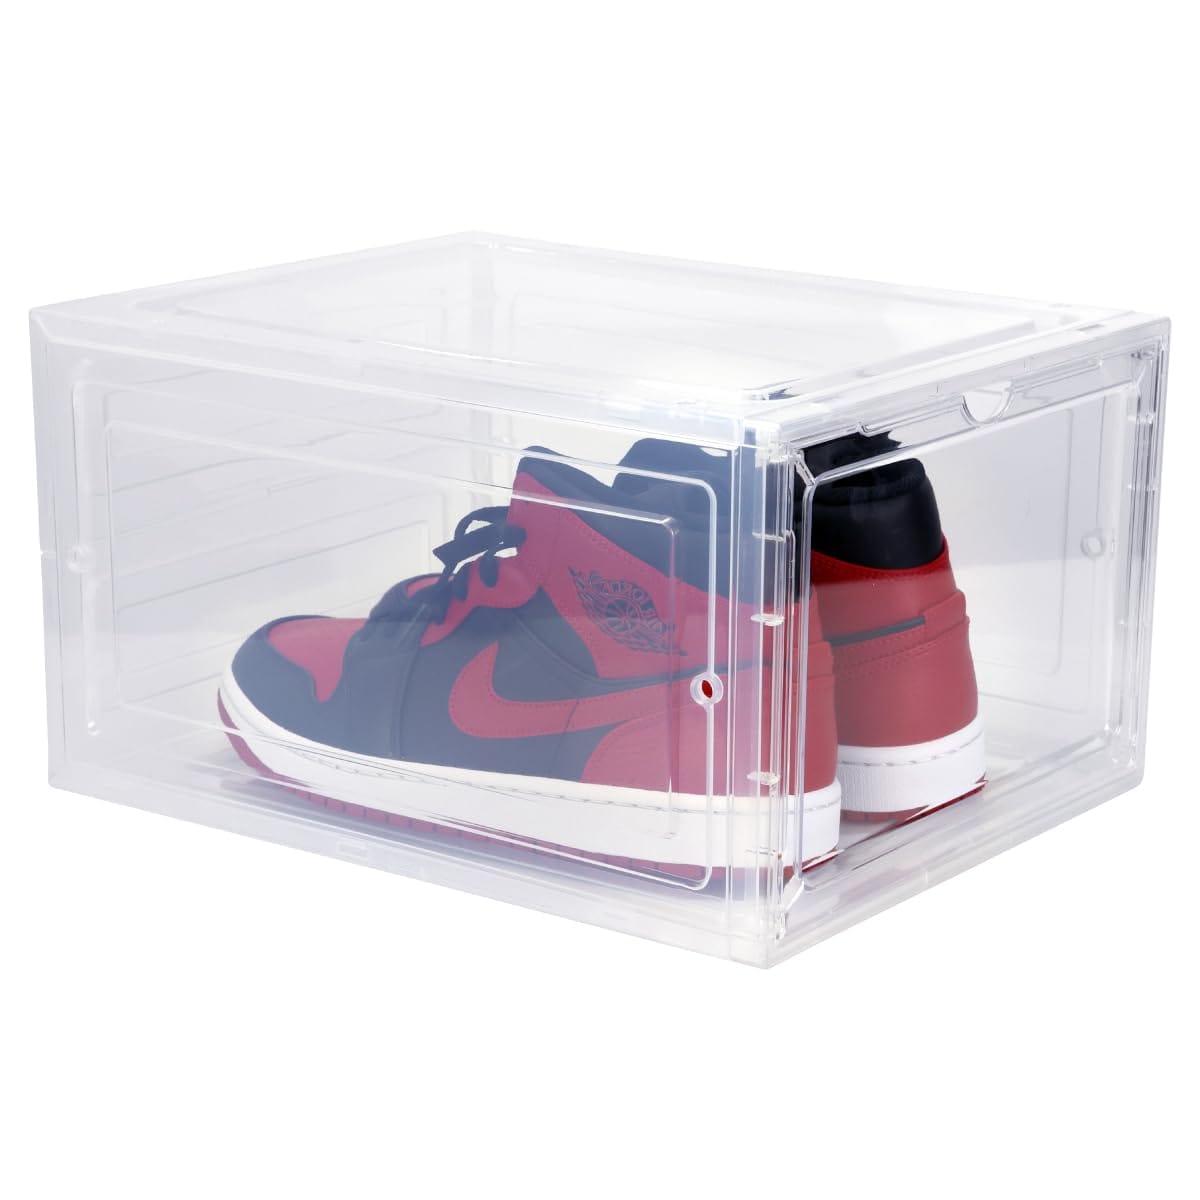 シューズケース 収納ボックス 靴箱 靴収納 アクリルケース ディスプレイケース コレクションケース 棚 クリアケース ガンプラ ケース シューケアボックス シューズボックス スニーカーボックス…